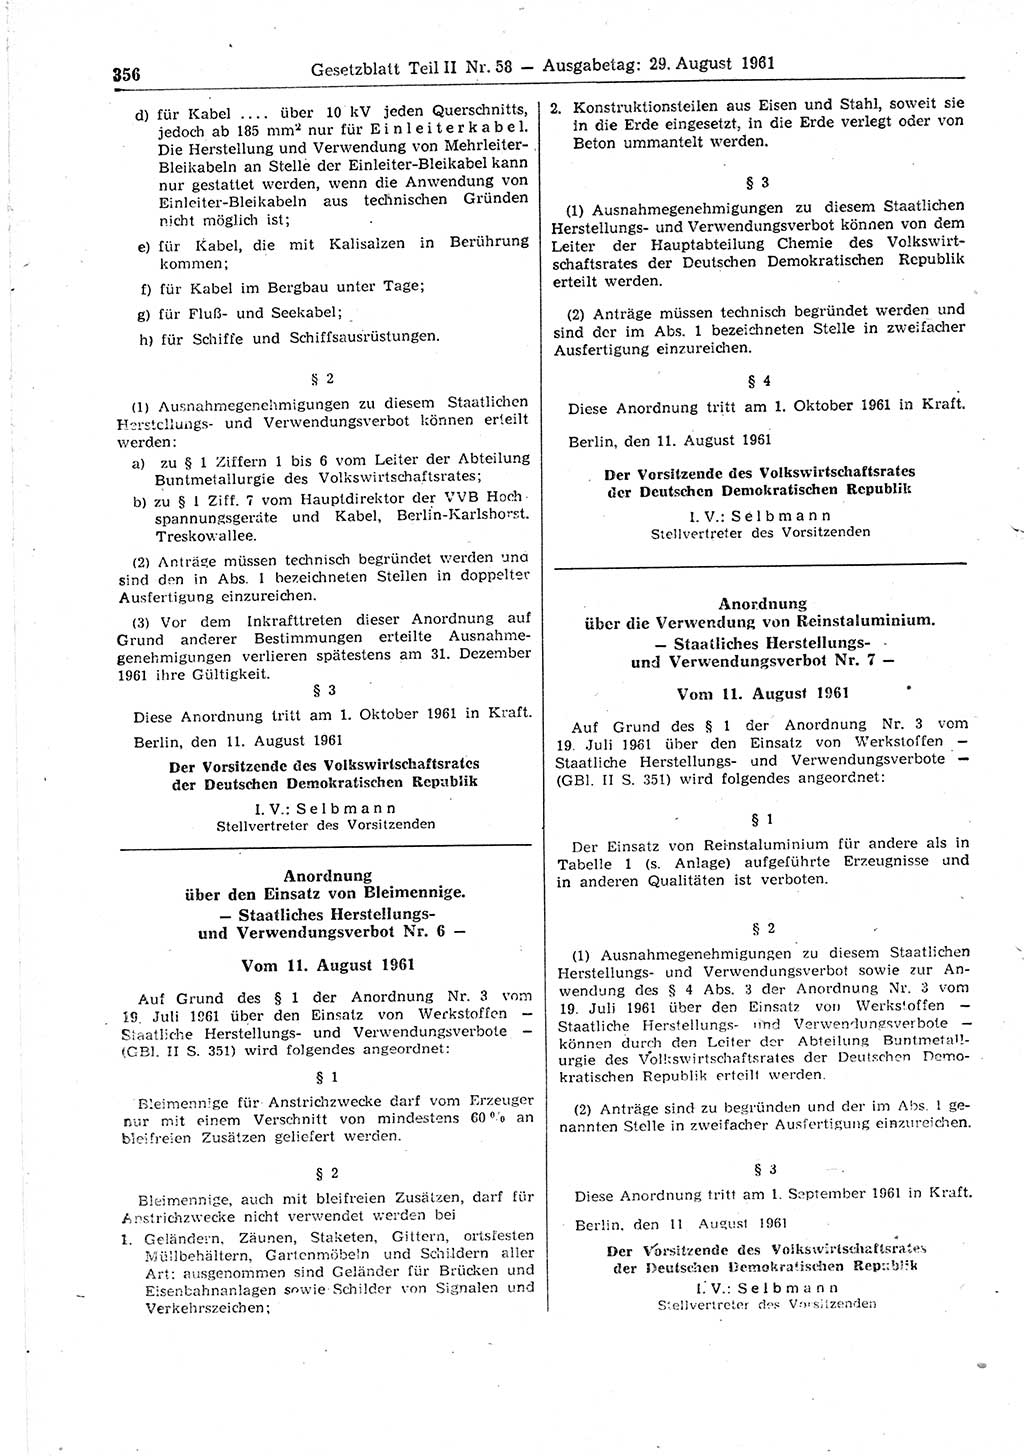 Gesetzblatt (GBl.) der Deutschen Demokratischen Republik (DDR) Teil ⅠⅠ 1961, Seite 356 (GBl. DDR ⅠⅠ 1961, S. 356)